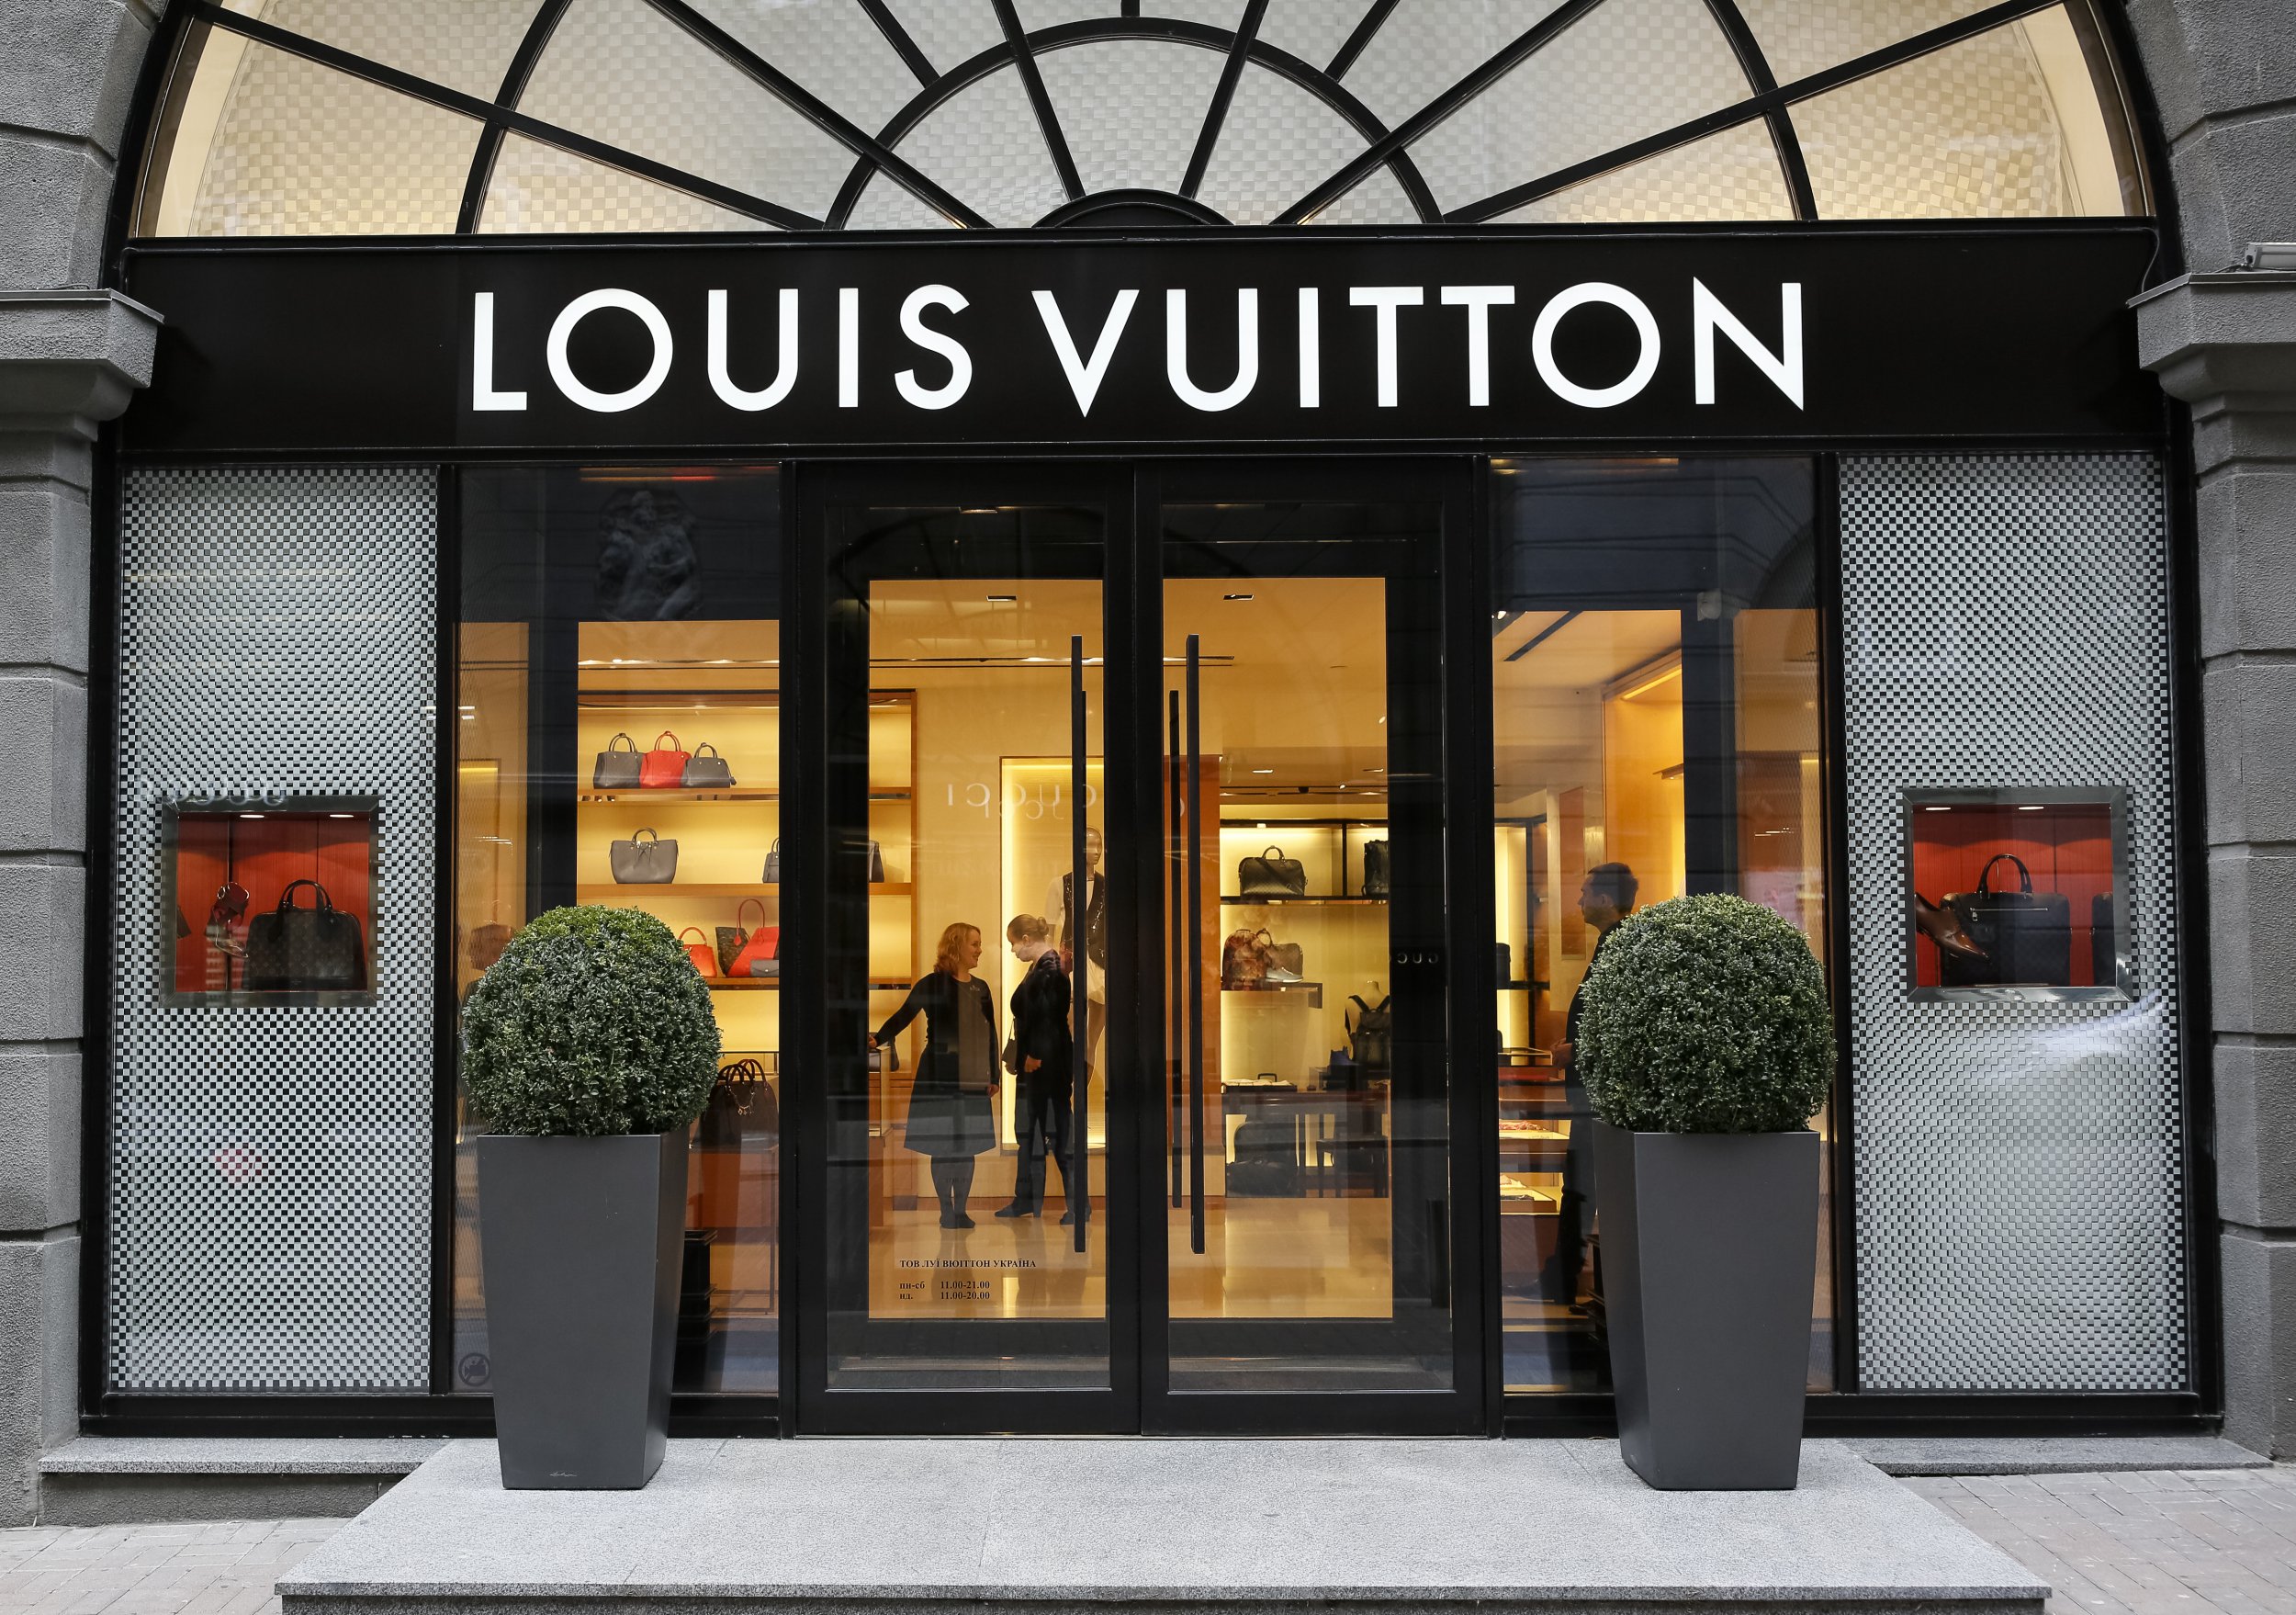 Take a tour of Louis Vuitton's fragrance house